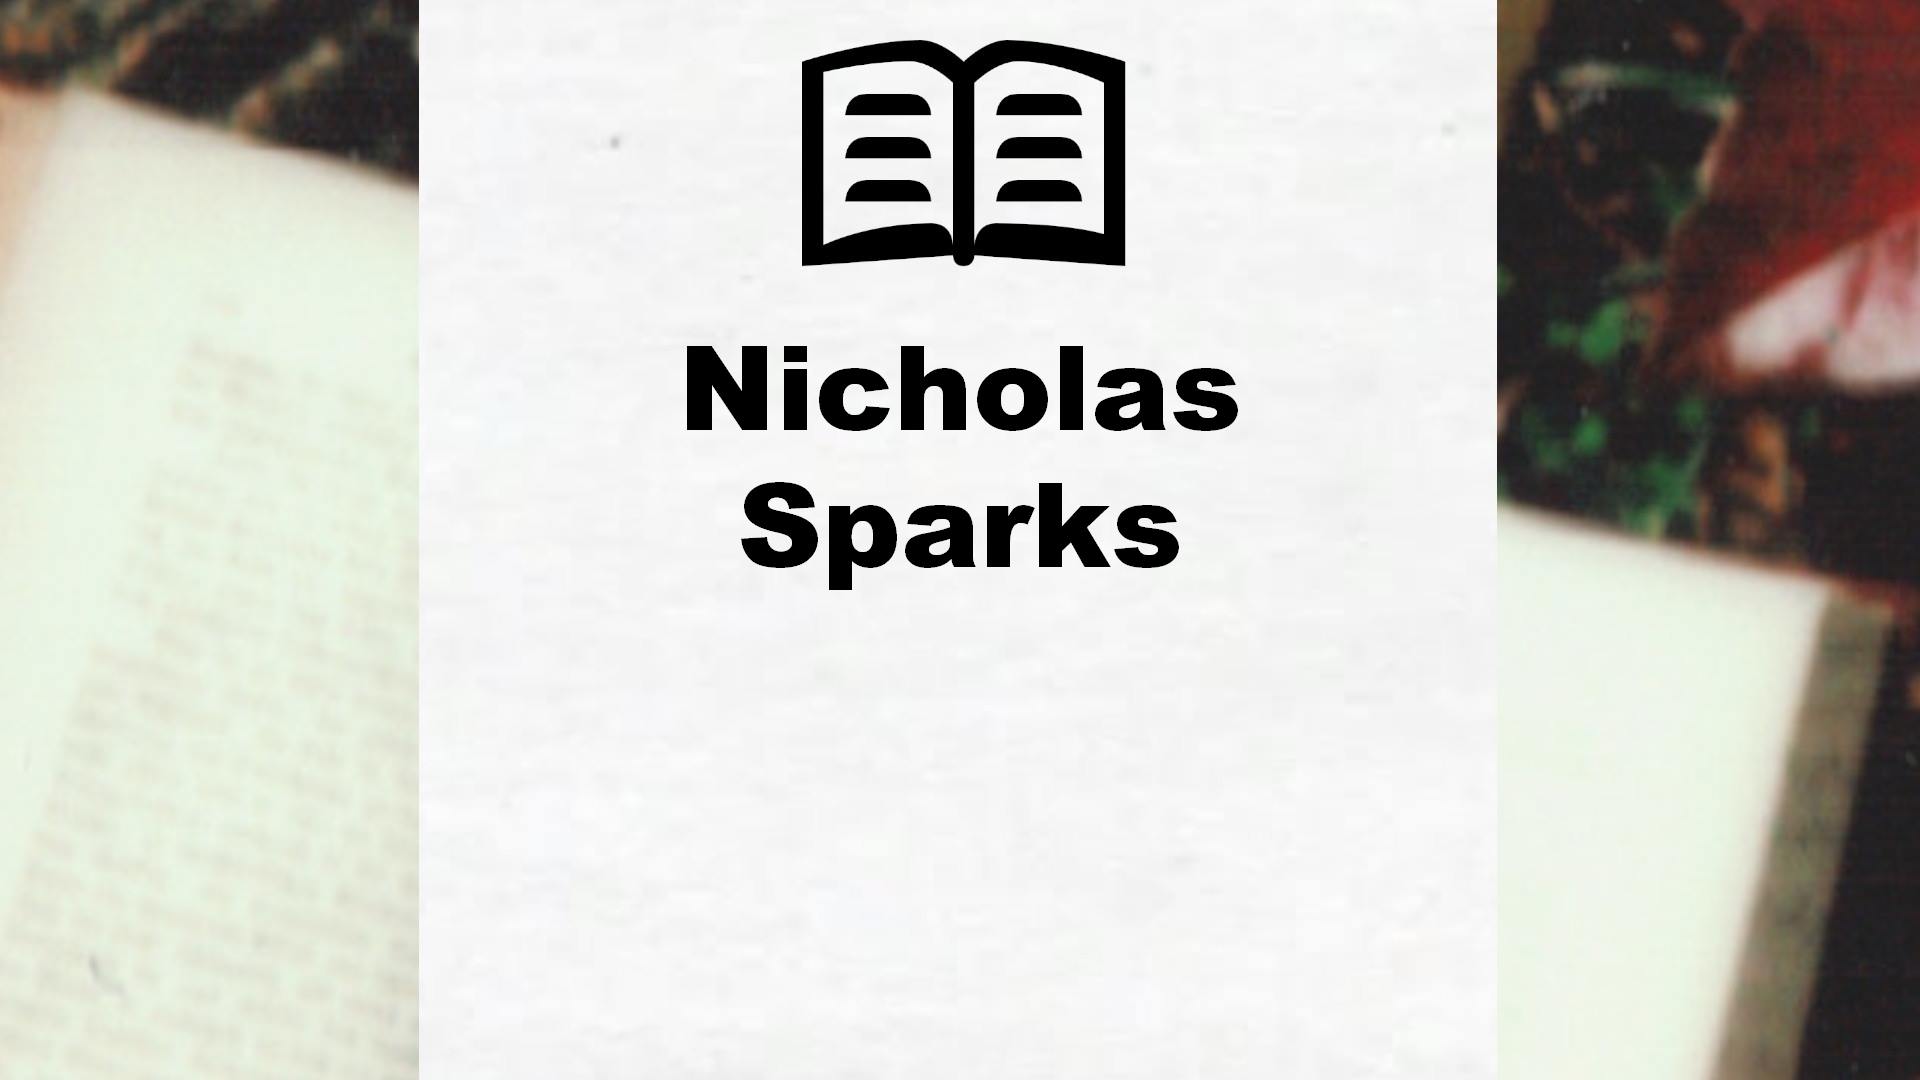 Livres de Nicholas Sparks